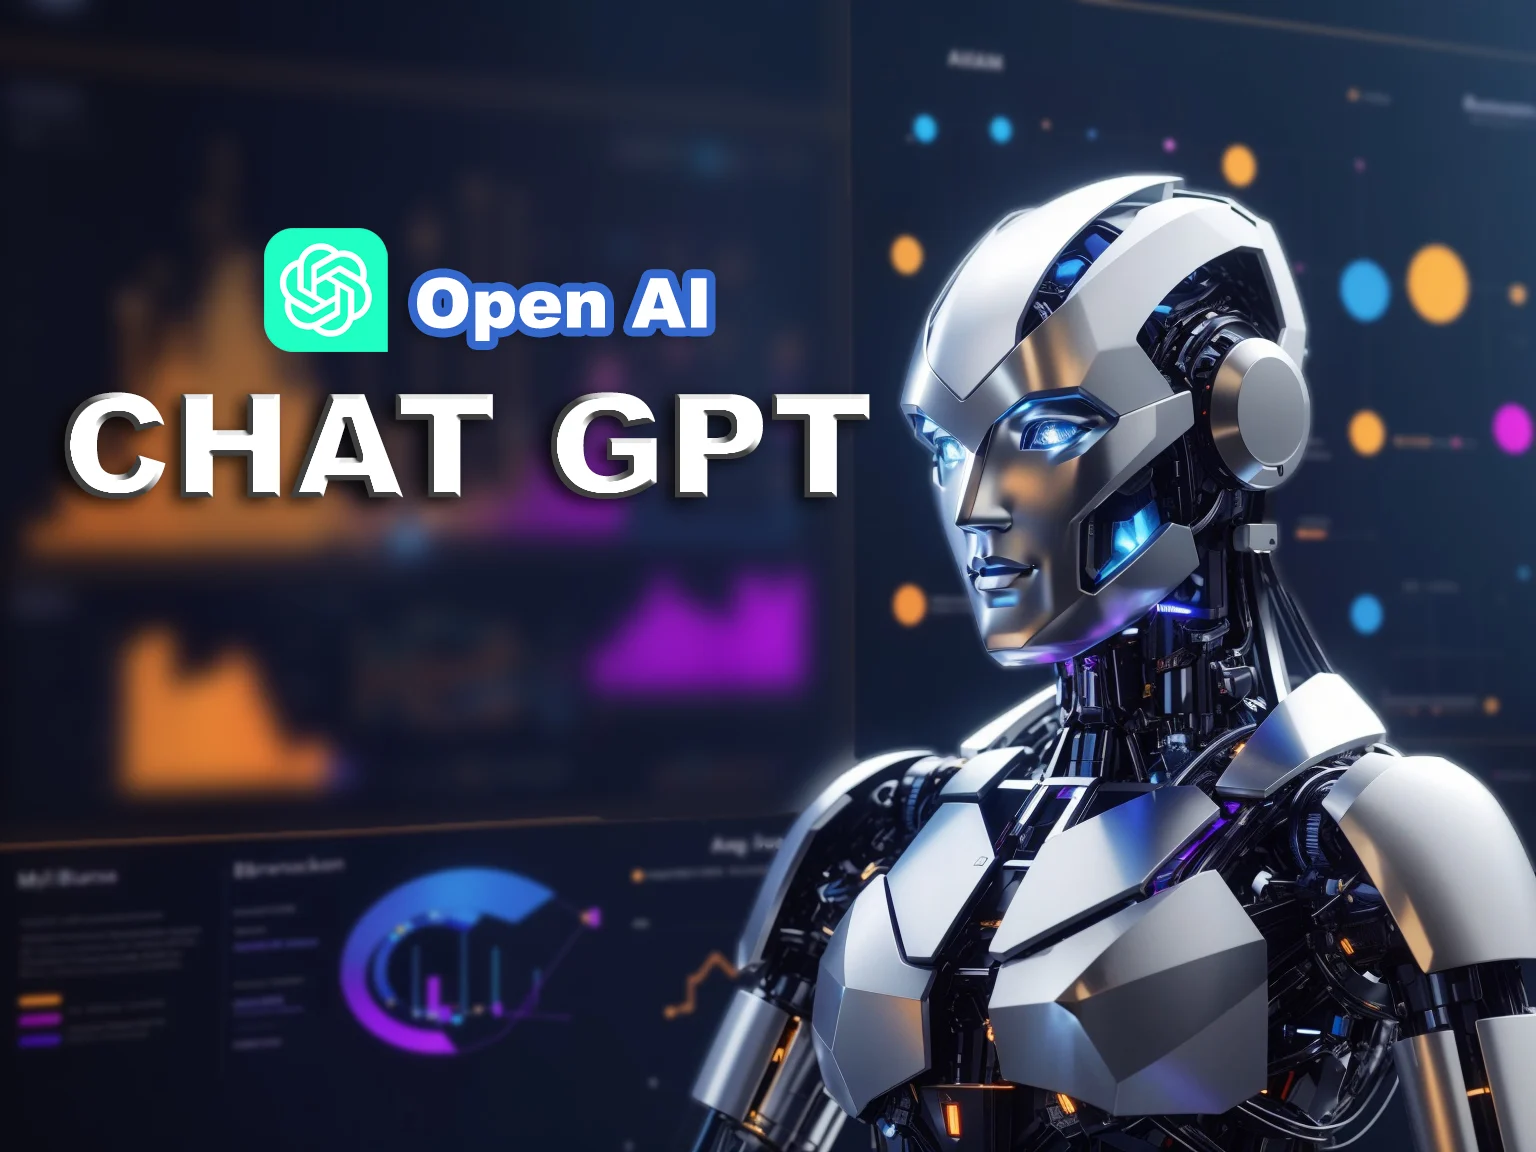 图片展示了一个具有未来感的机器人头部侧面，背景为带有“OpenAI CHAT GPT”字样的虚拟界面。